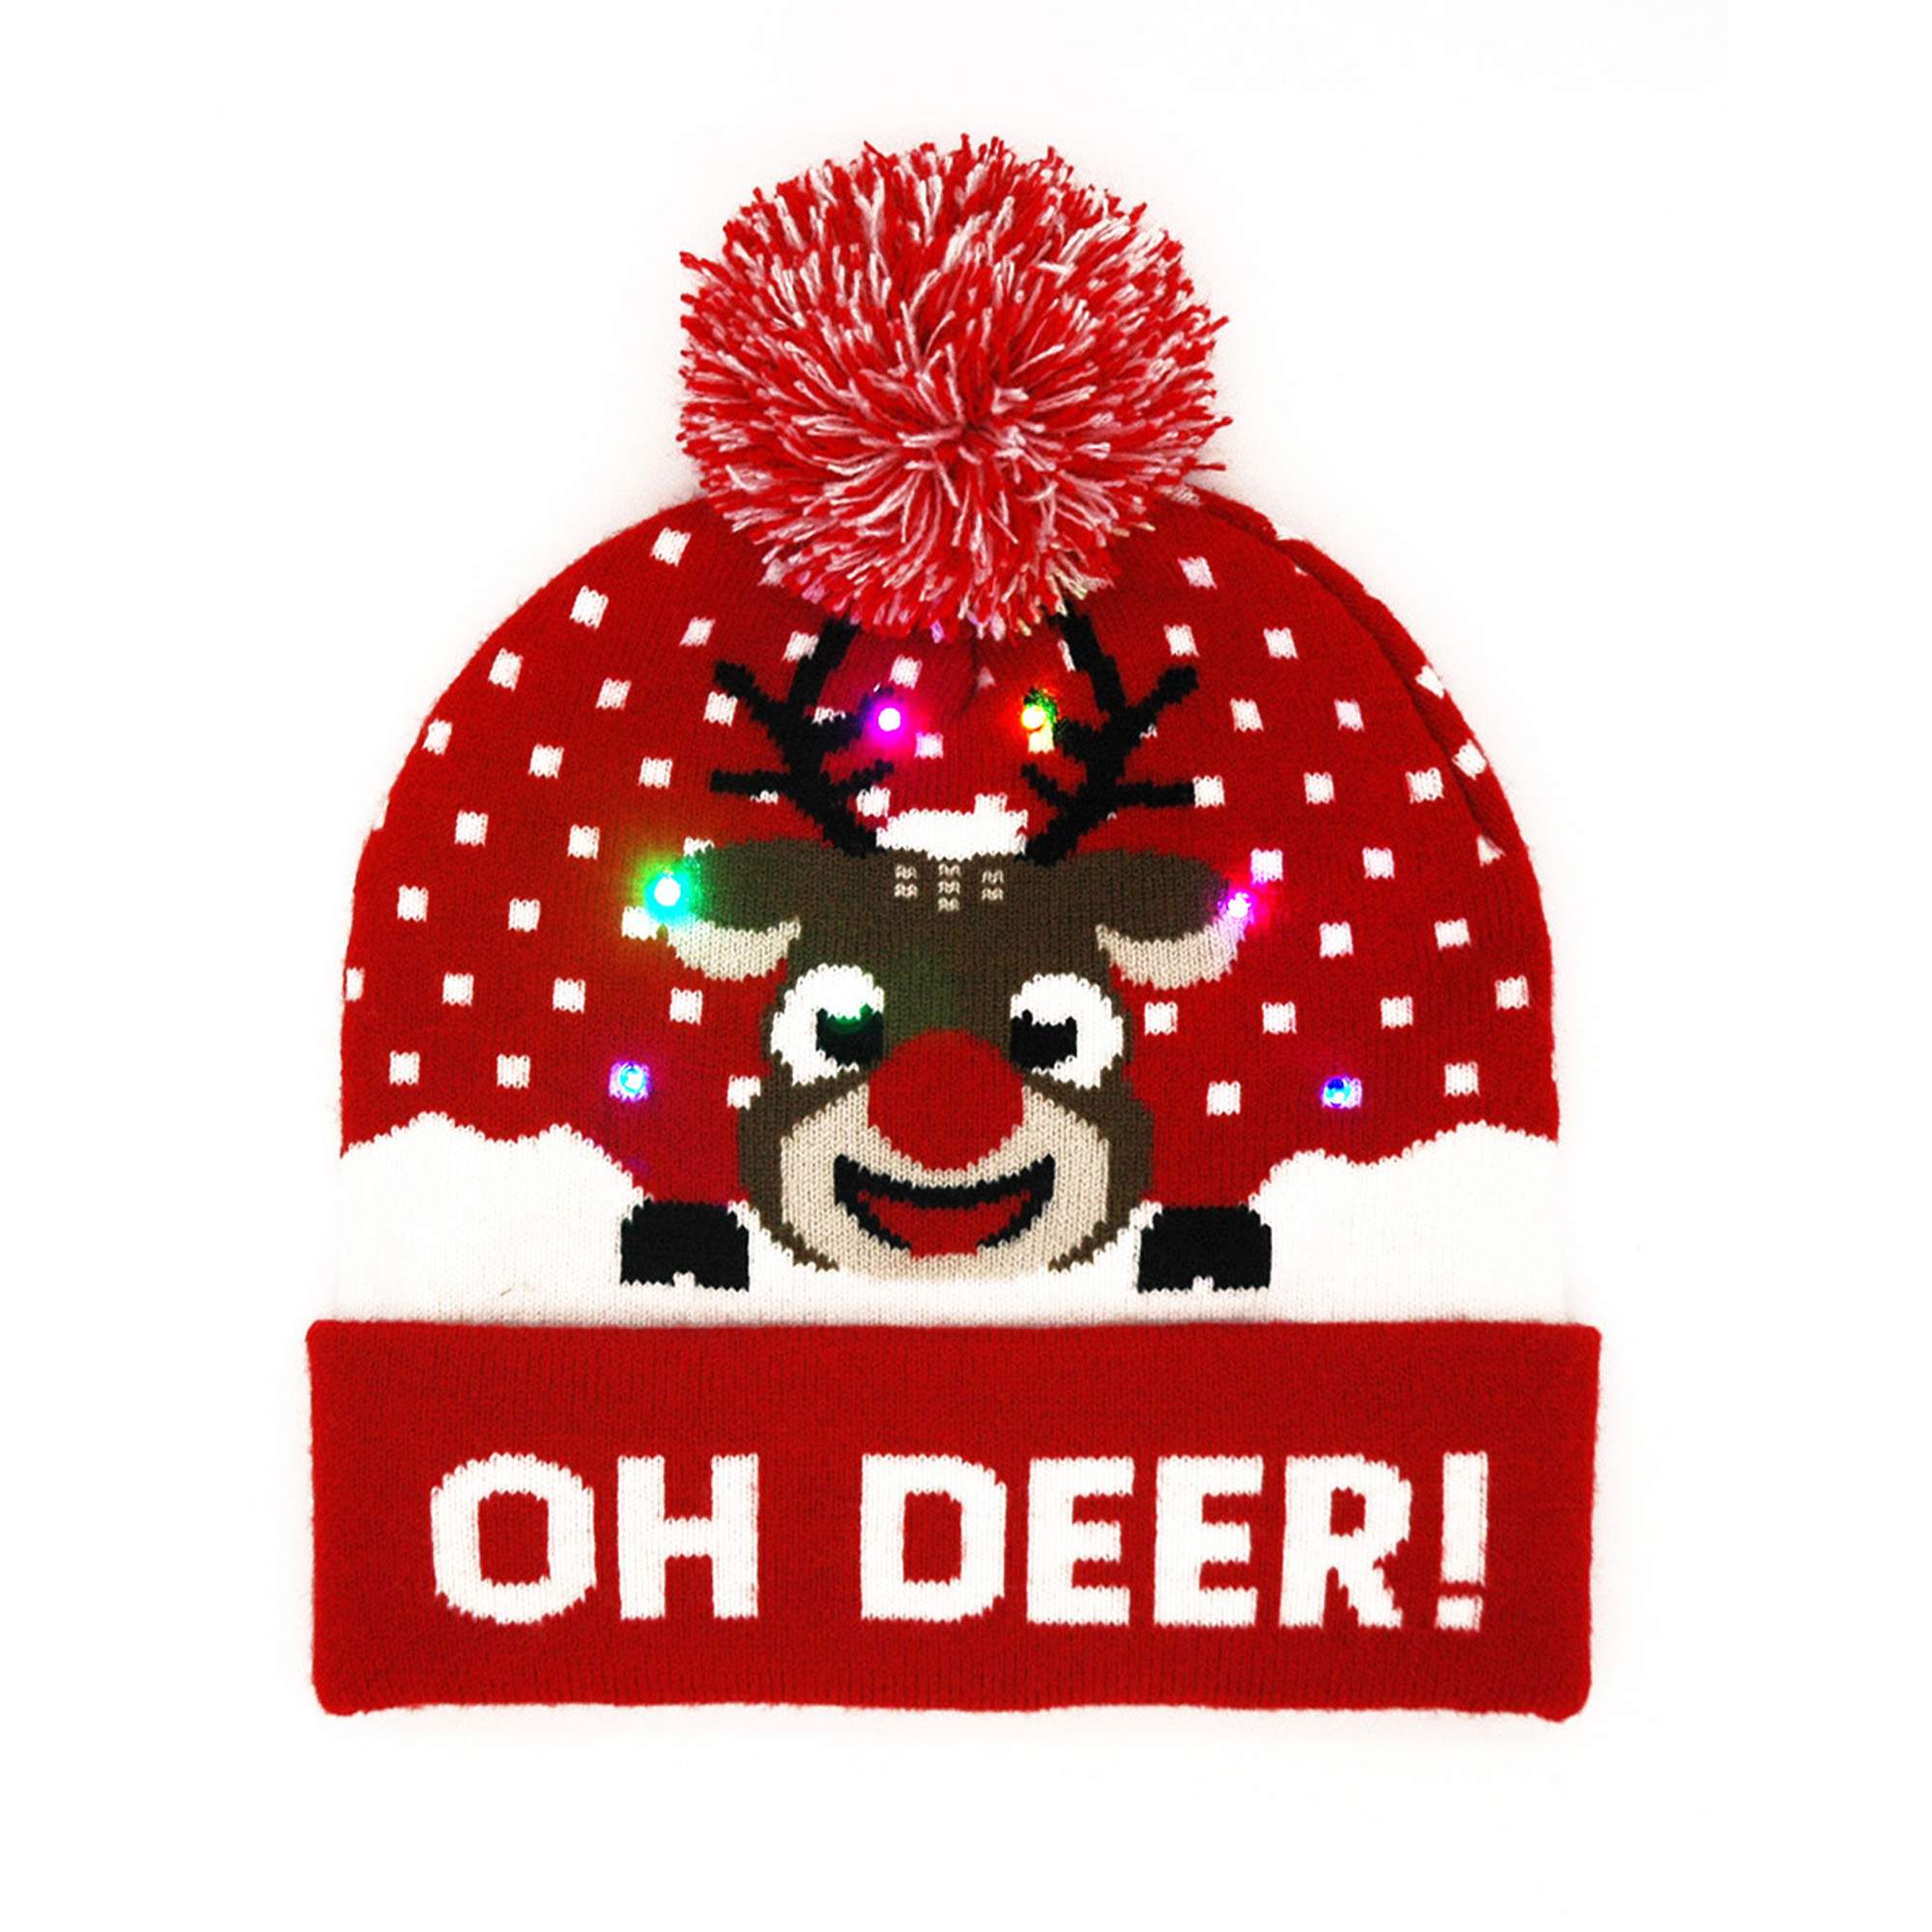 Oh, deer